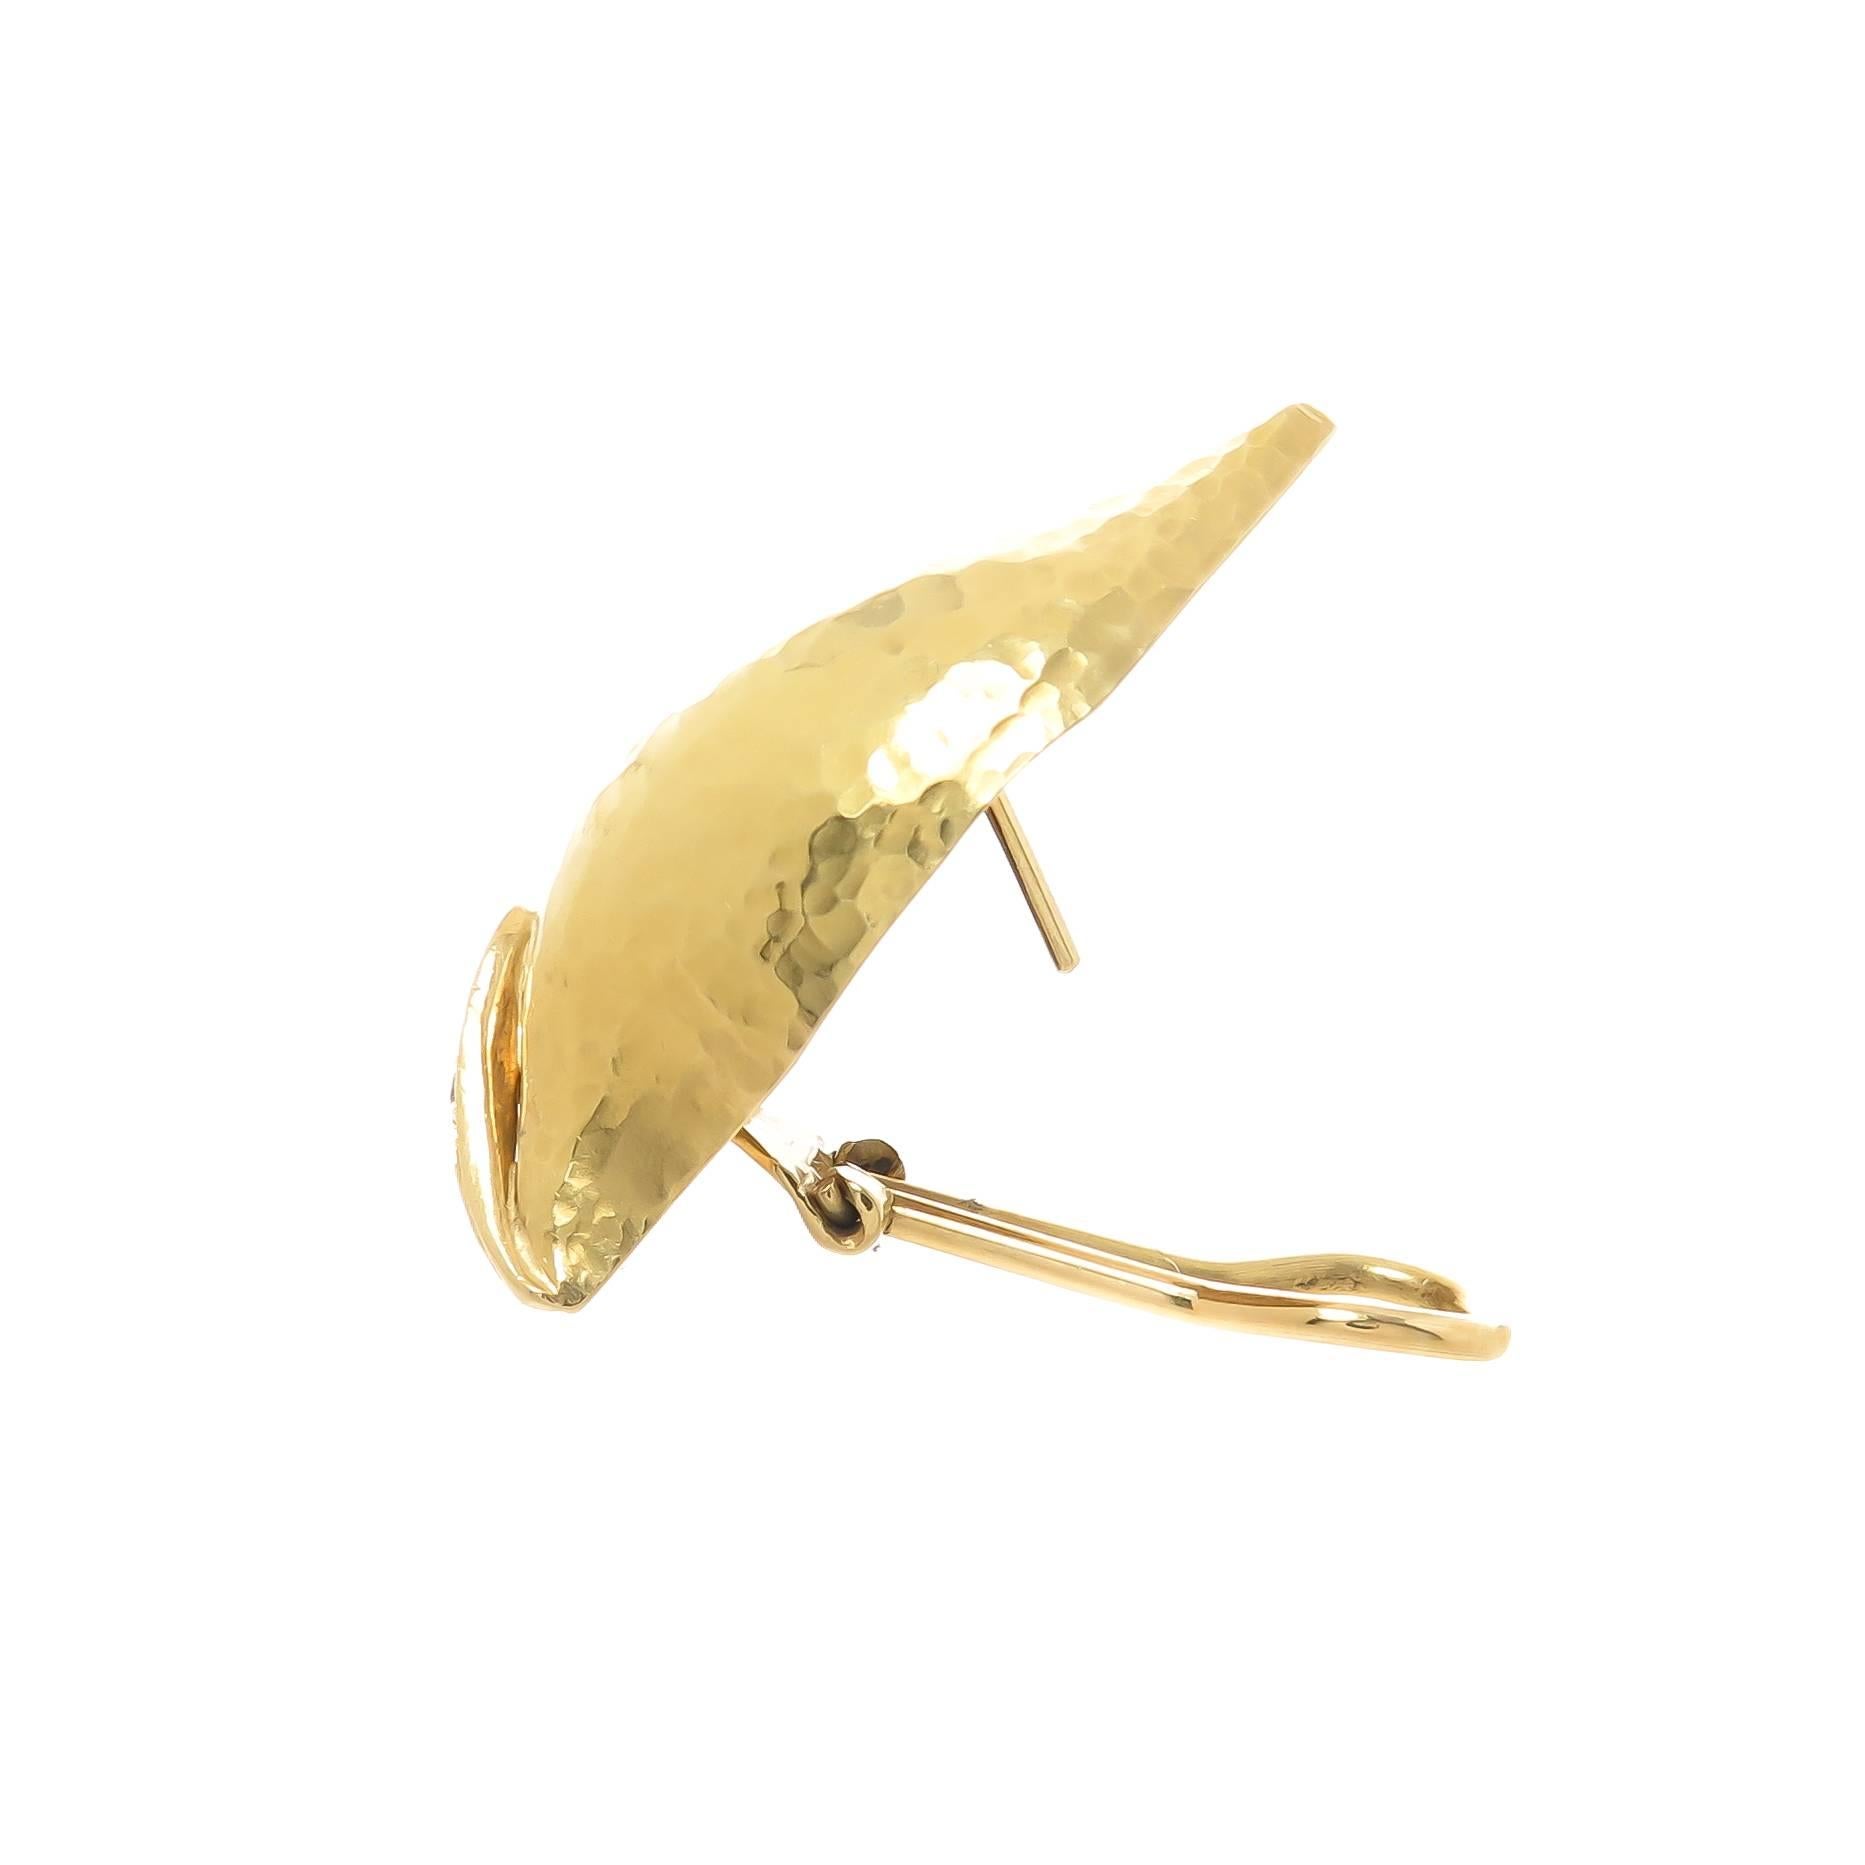 Circa 1990 Paloma Picasso für Tiffany & Company 18K Gelbgold Hand gehämmert Blatt Ohrringe, Messung 1 1/2 Zoll in der Länge und 1/2 Zoll breit. Set mit runden Diamanten im Brillantschliff von insgesamt 0,25 Karat. Mit Omega-Clip-Rückseiten, an denen